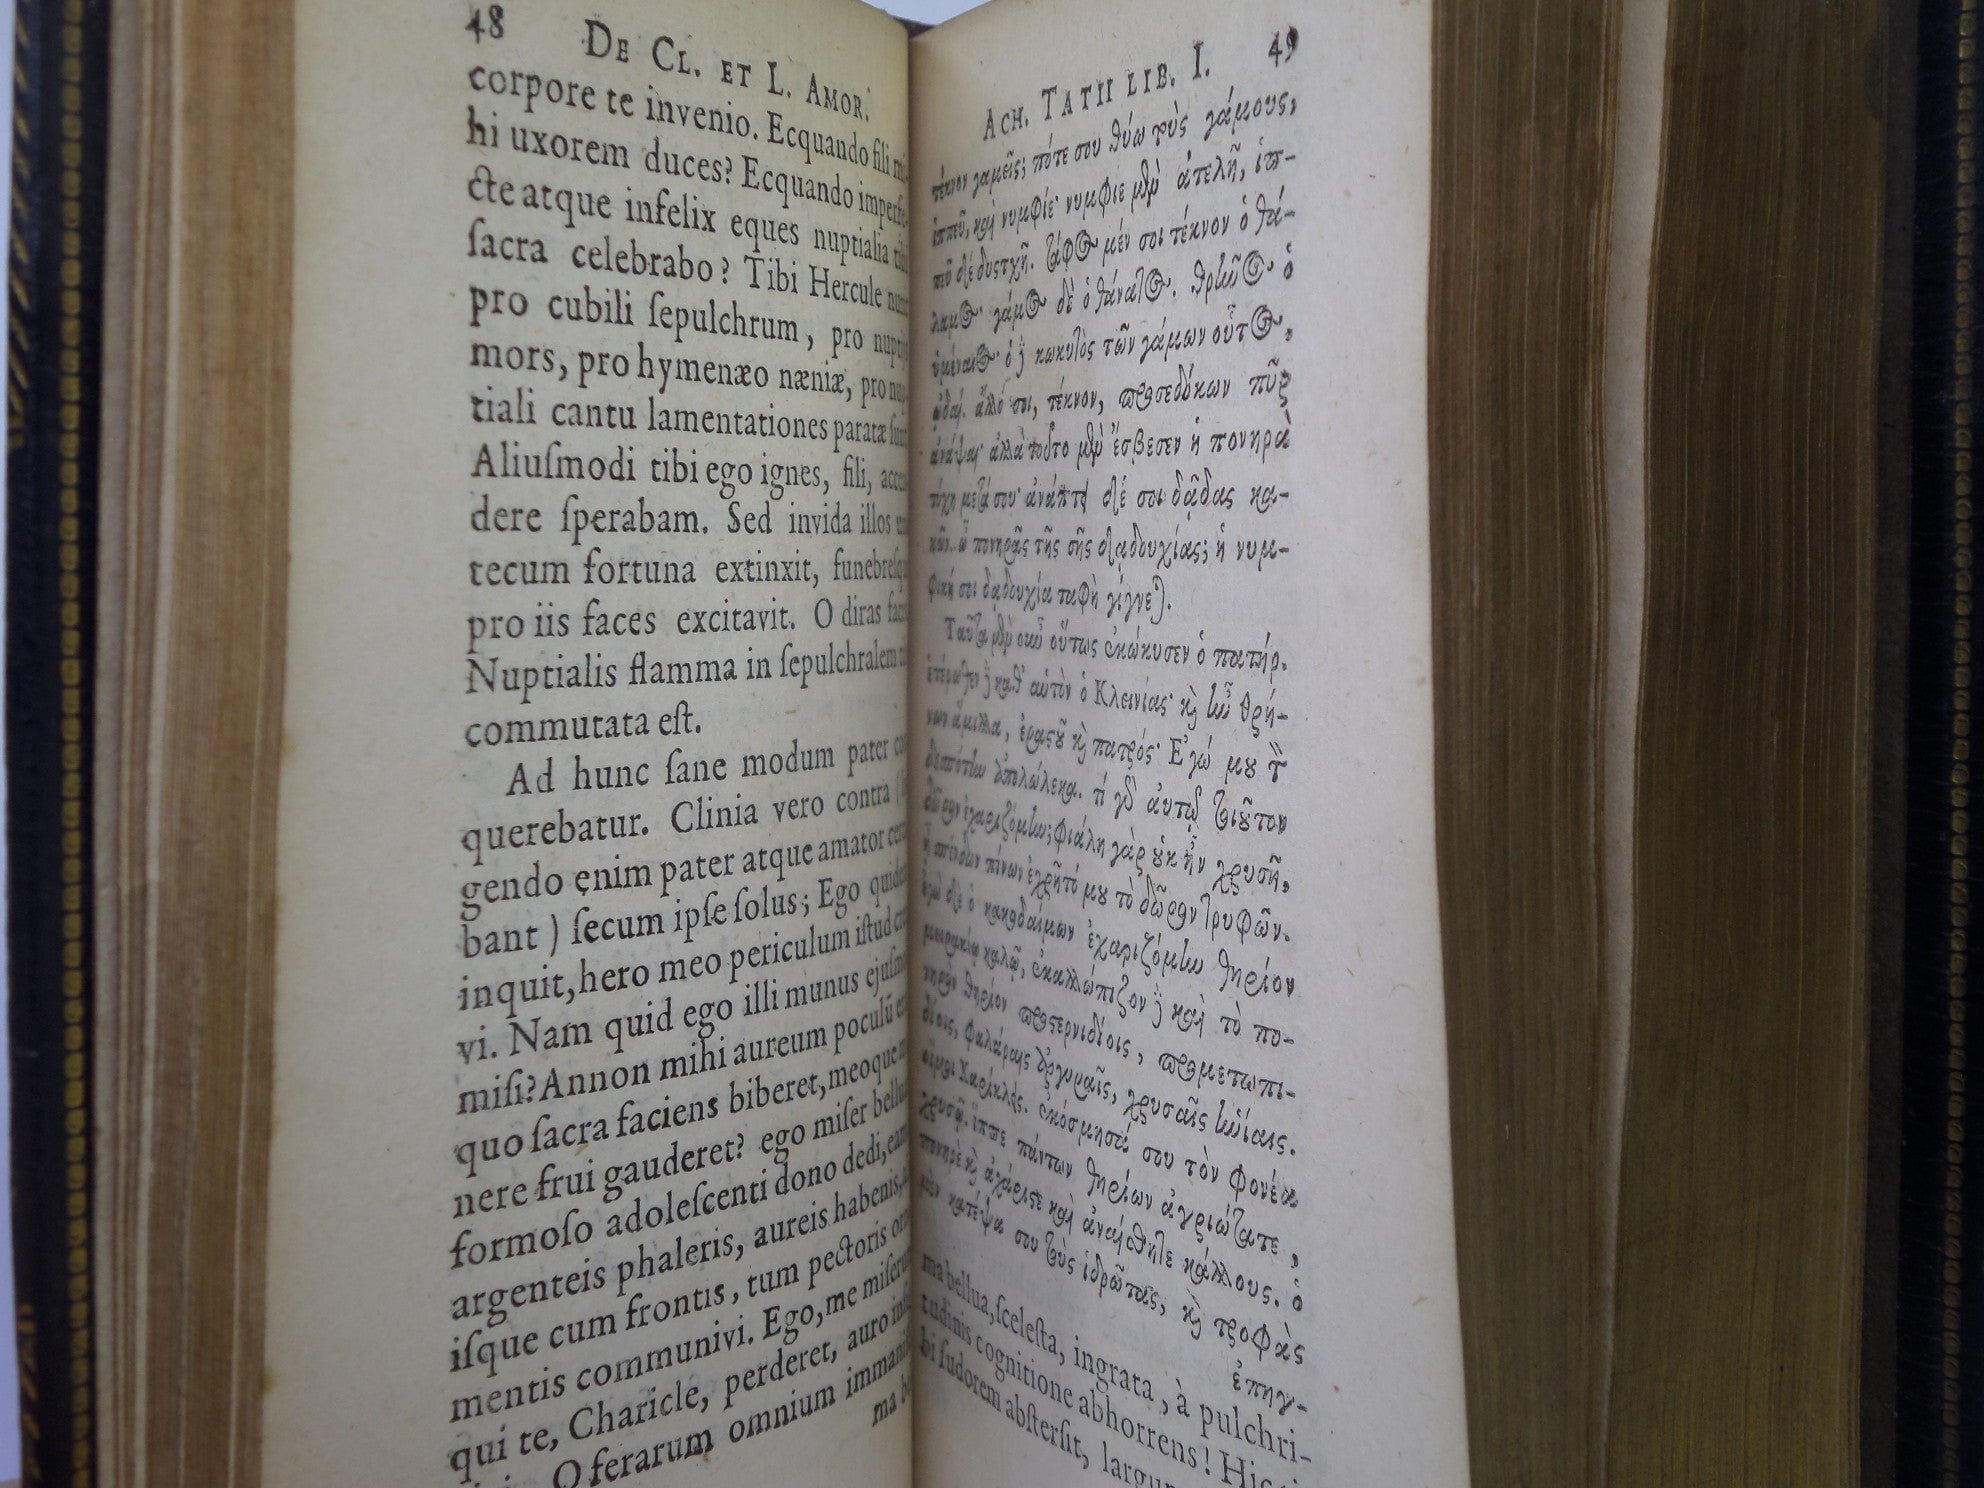 ACHILLES TATIUS - EROTIKON ACHILLEOSTATIOU, SIVE, DE CLITOPHONTIS  LEUCIPPES AMORIBUS LIBRI VIII EX EDITIONE CL. SALMASII 1640